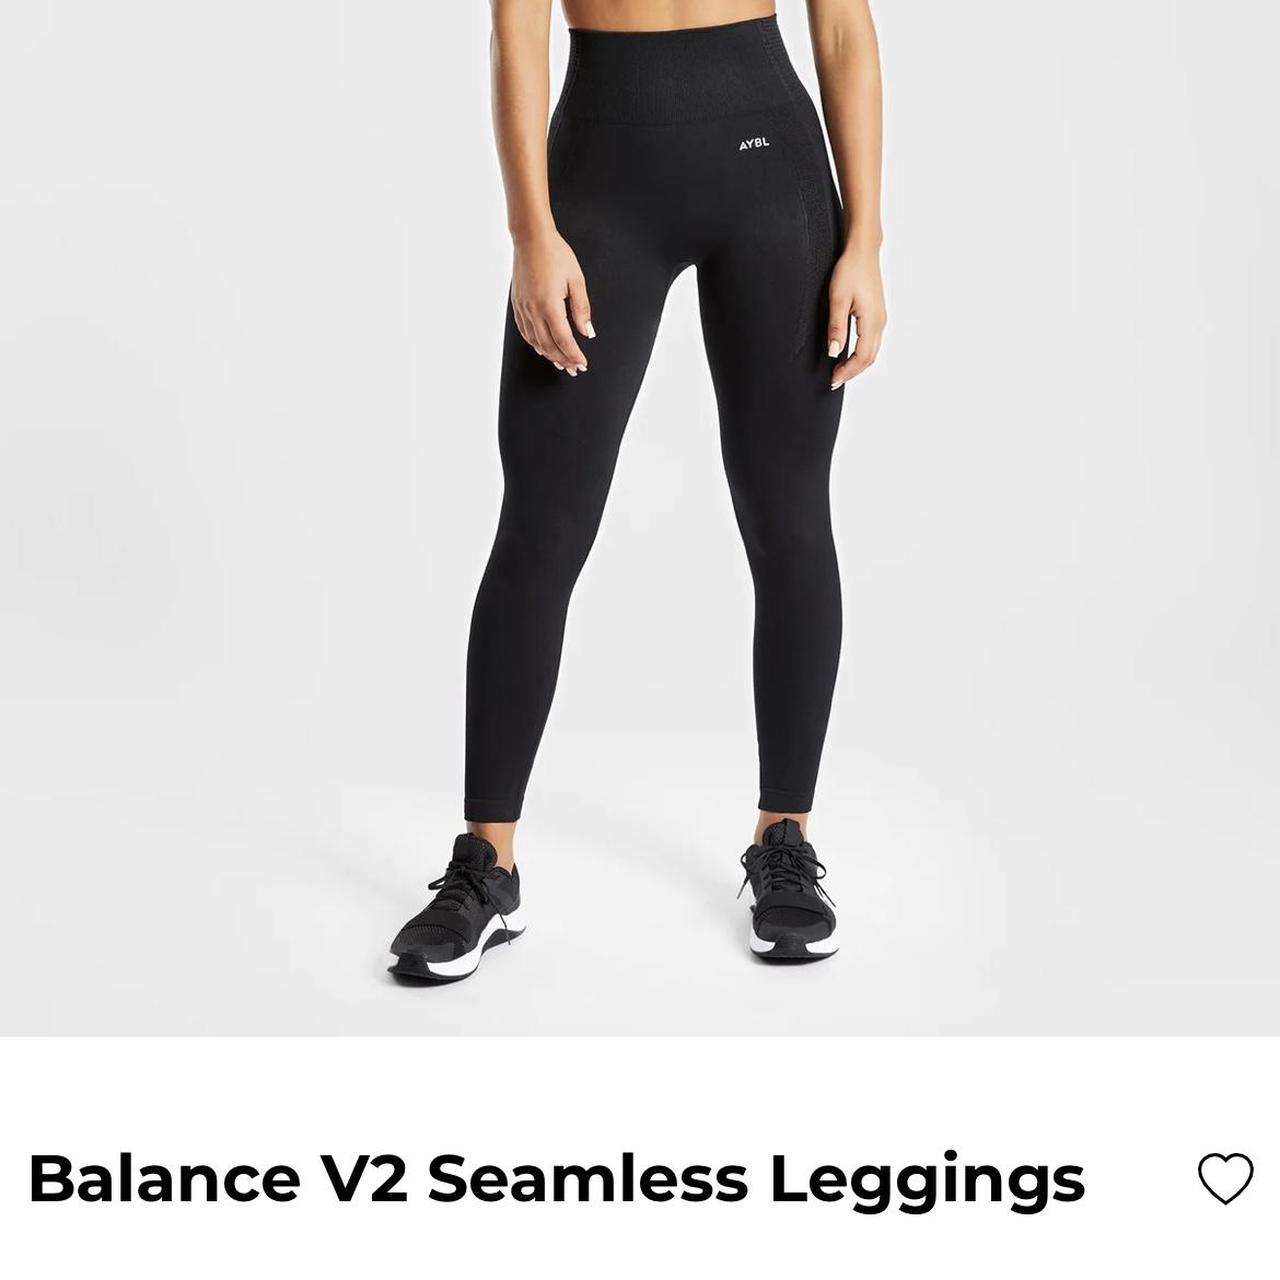 Brand new AYBL leggings - Balance V2 seamless - Depop